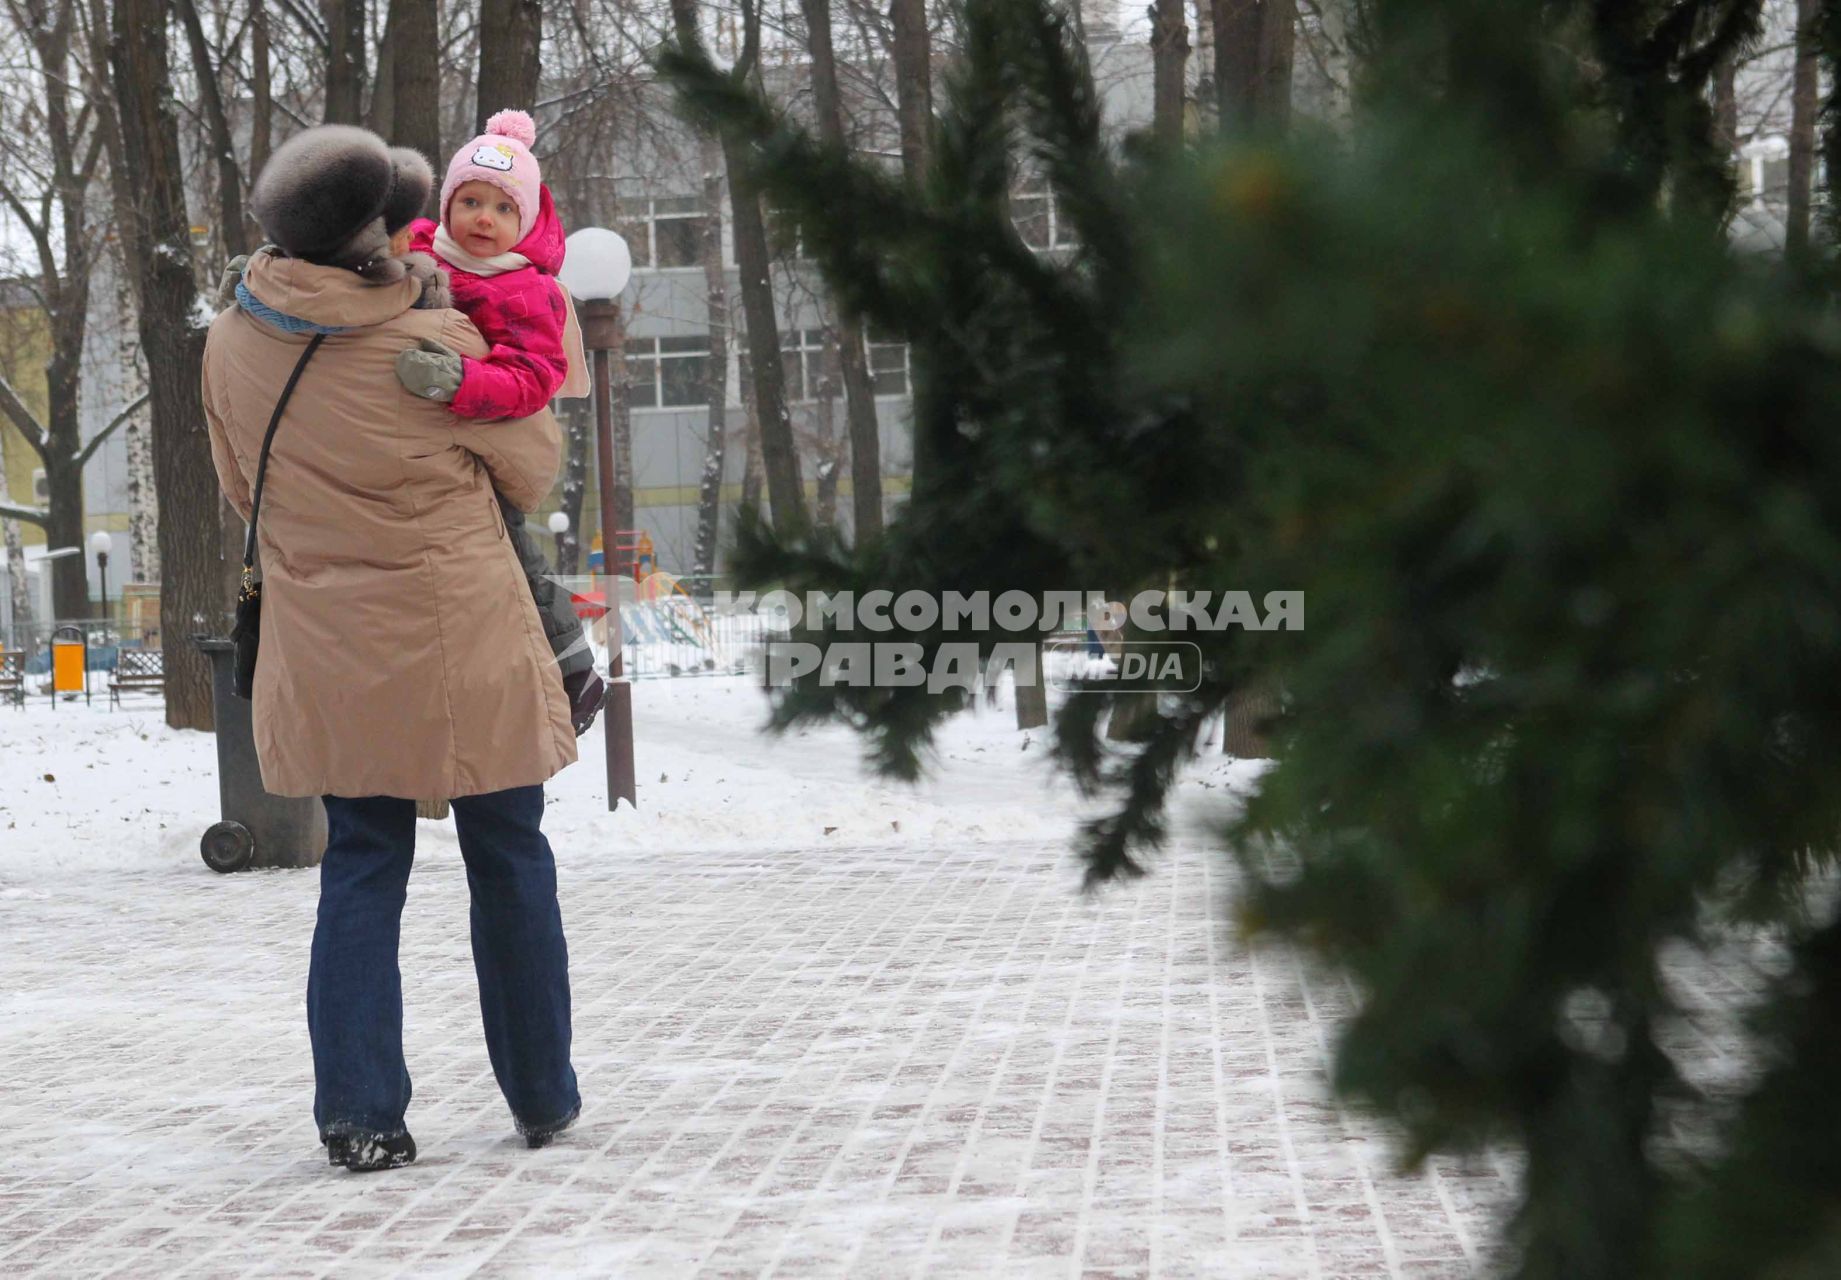 8 декабря 2010 года. Зима. Снег. Женщина с ребенком.